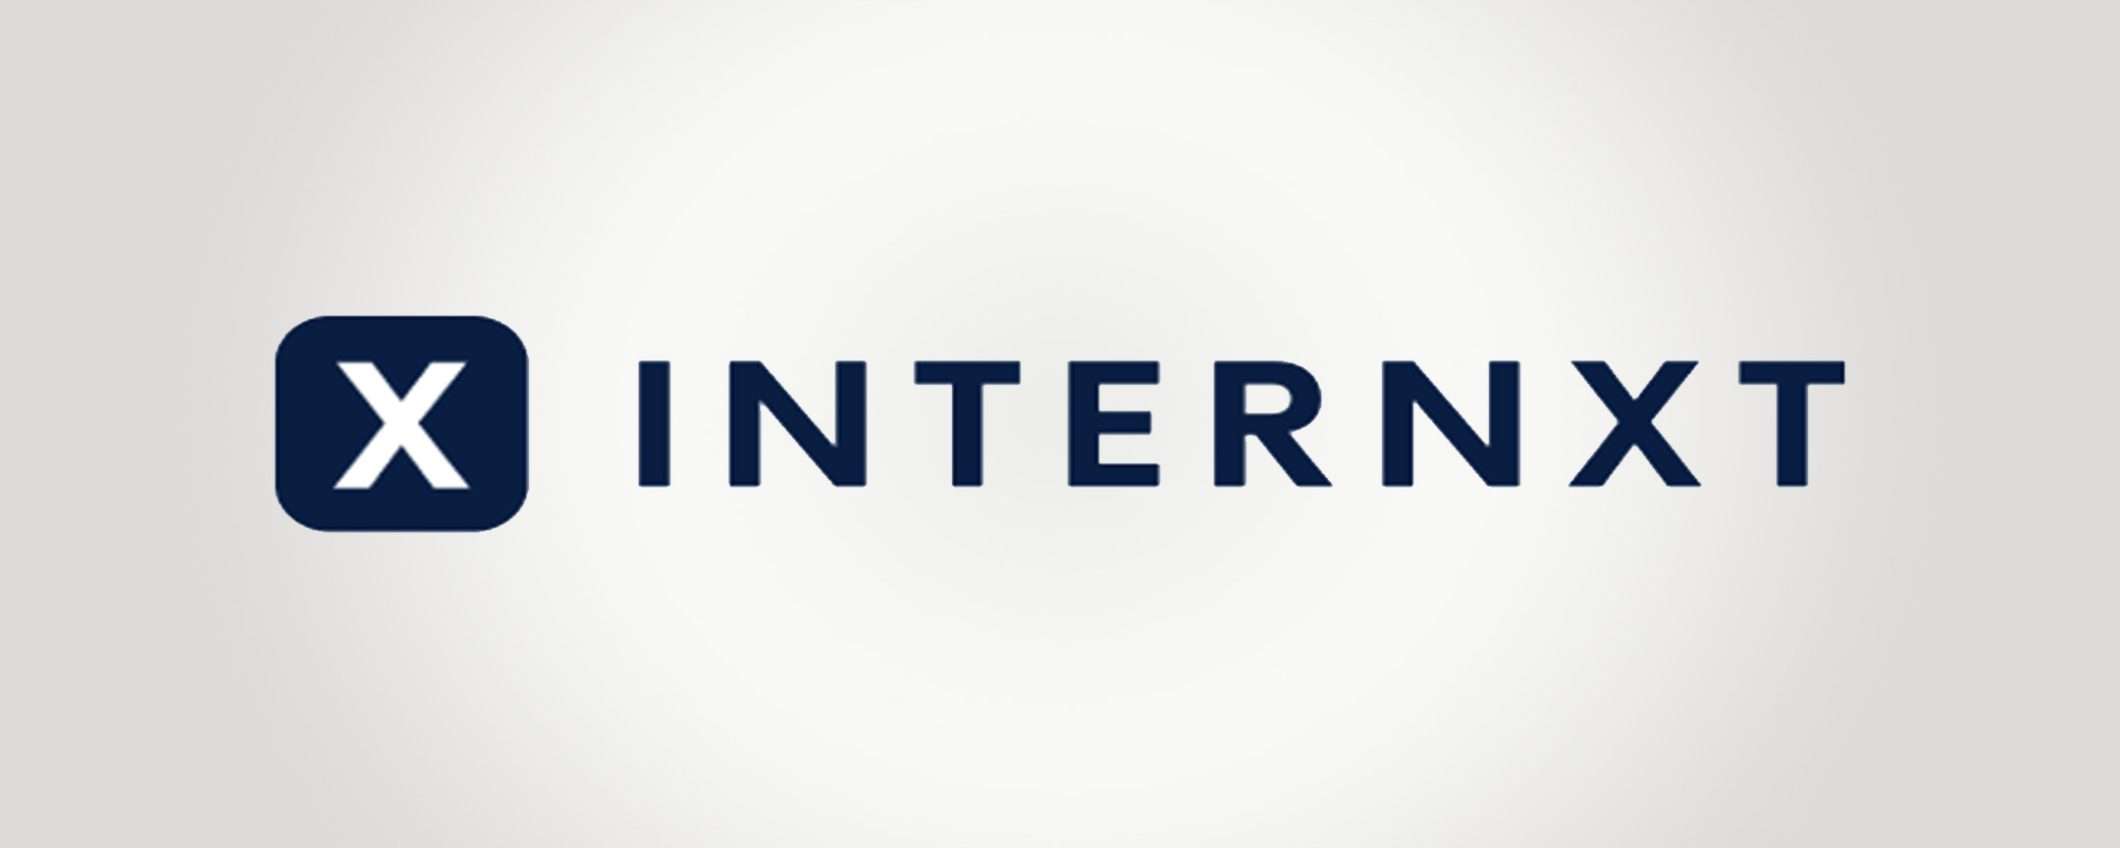 Prova gratuitamente le incredibili funzionalità del cloud di Internxt